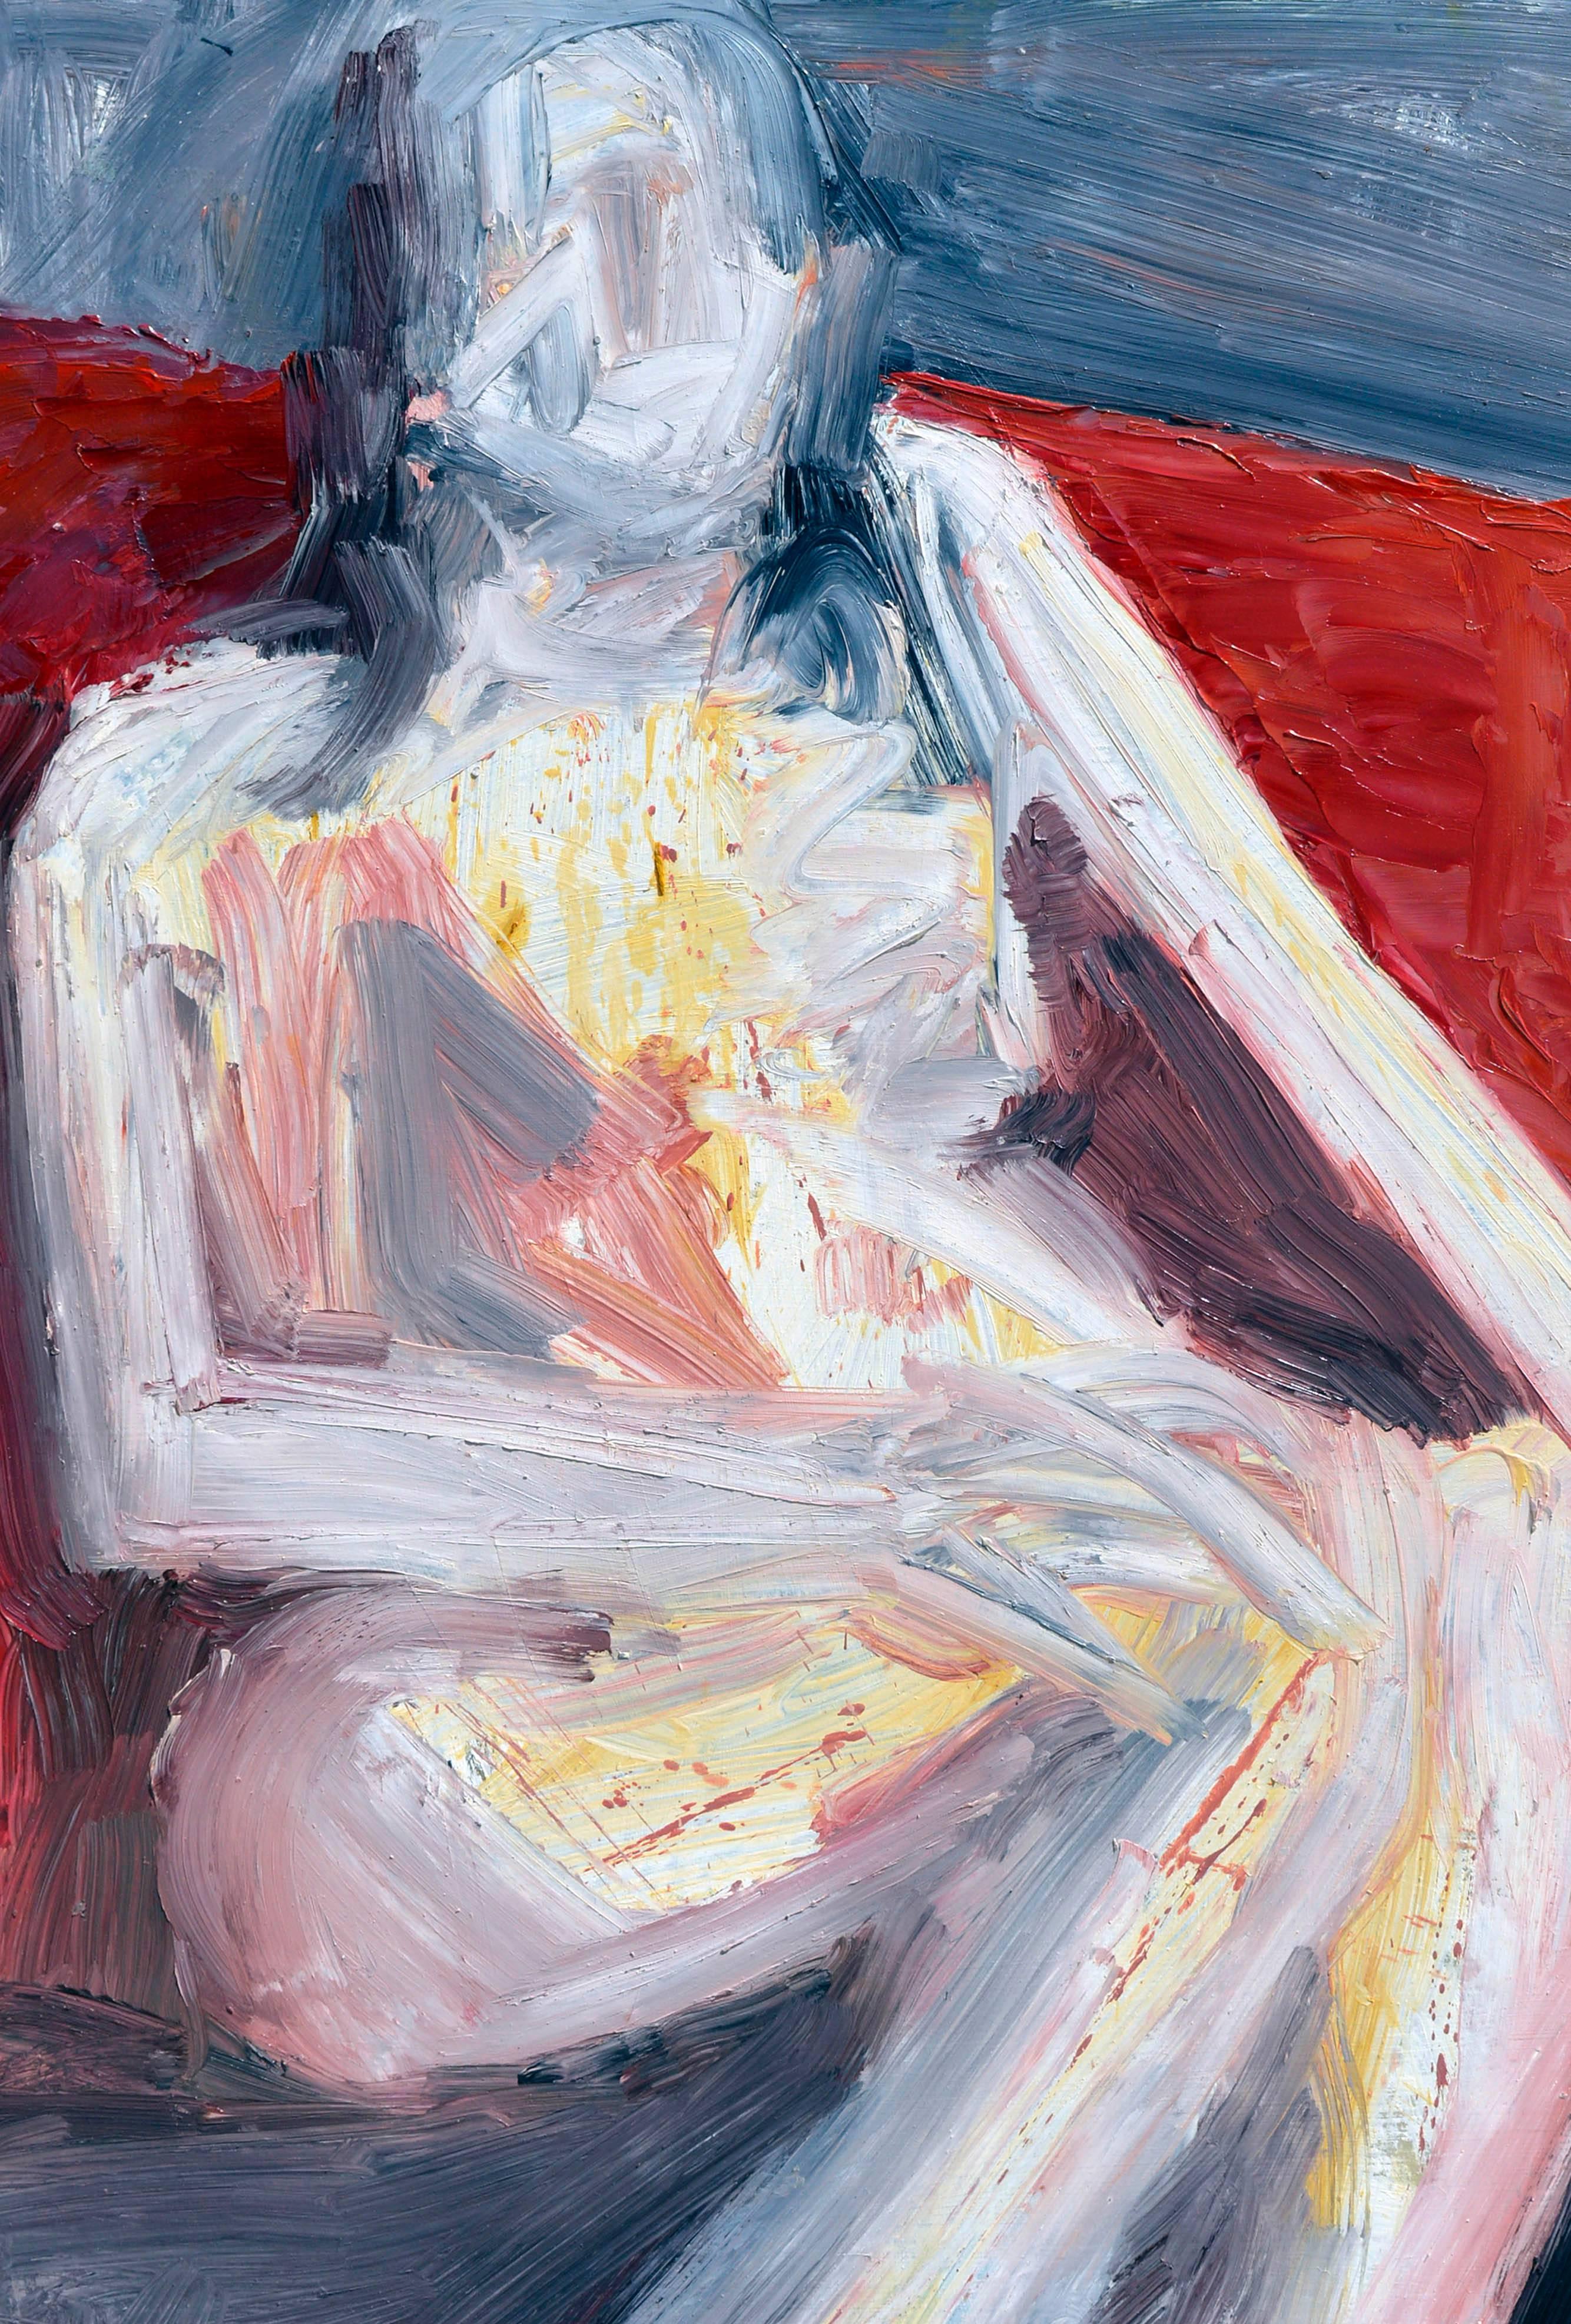  Expressionnisme abstrait - Femme assise figurative - Painting de Daniel David Fuentes